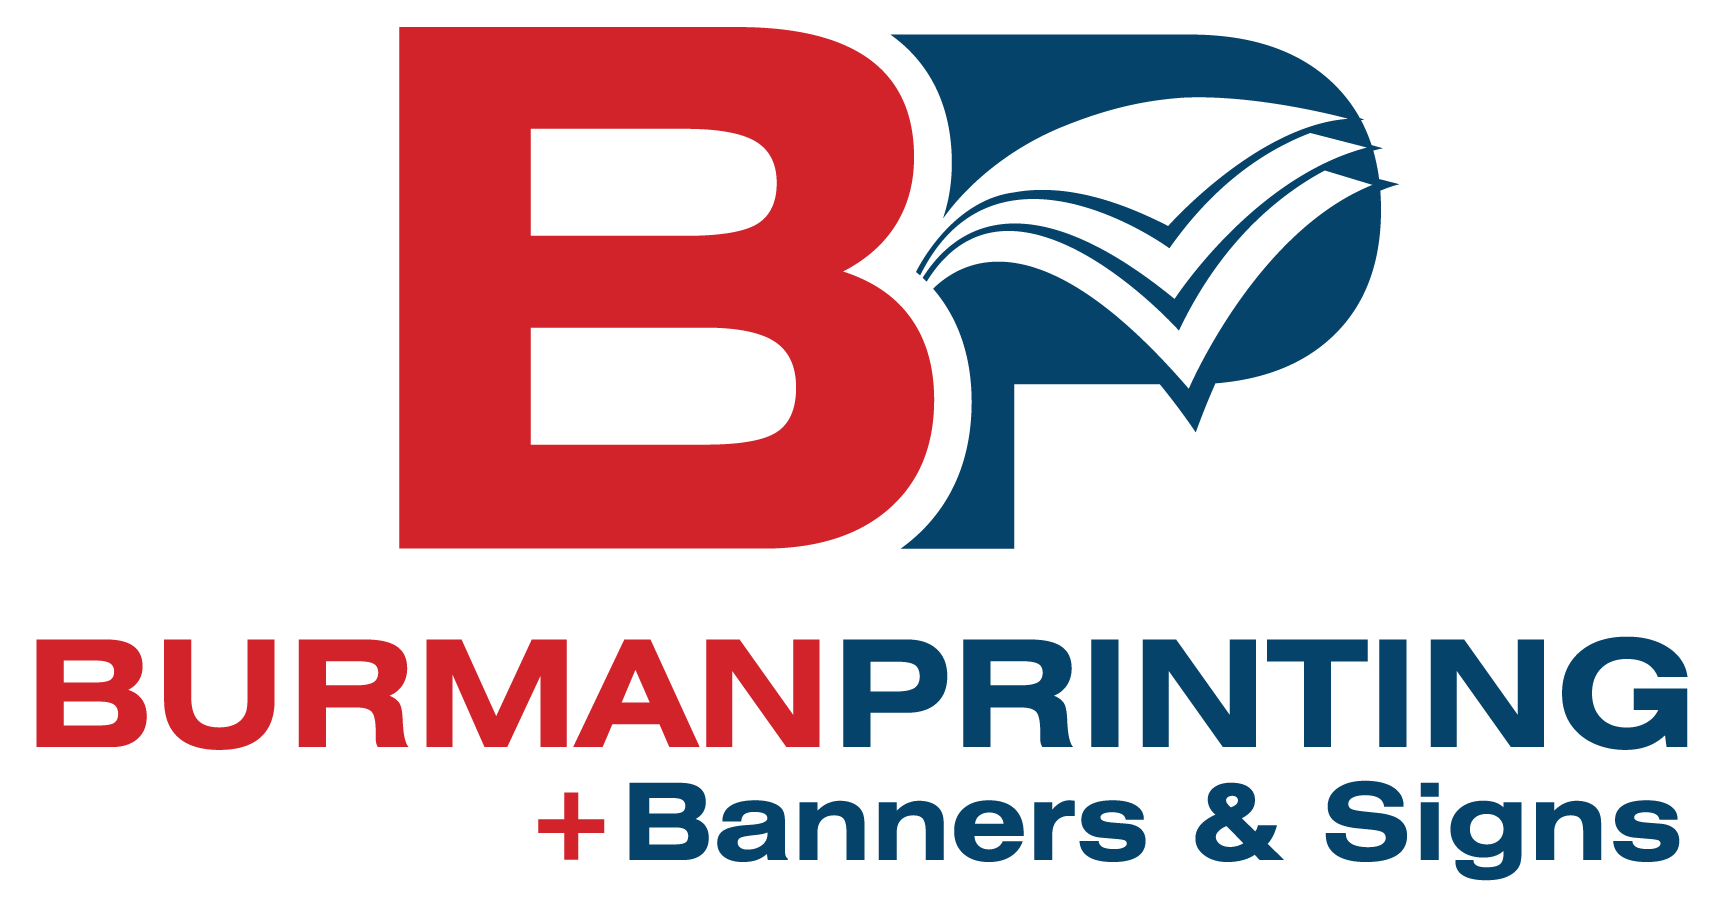 Burman printing